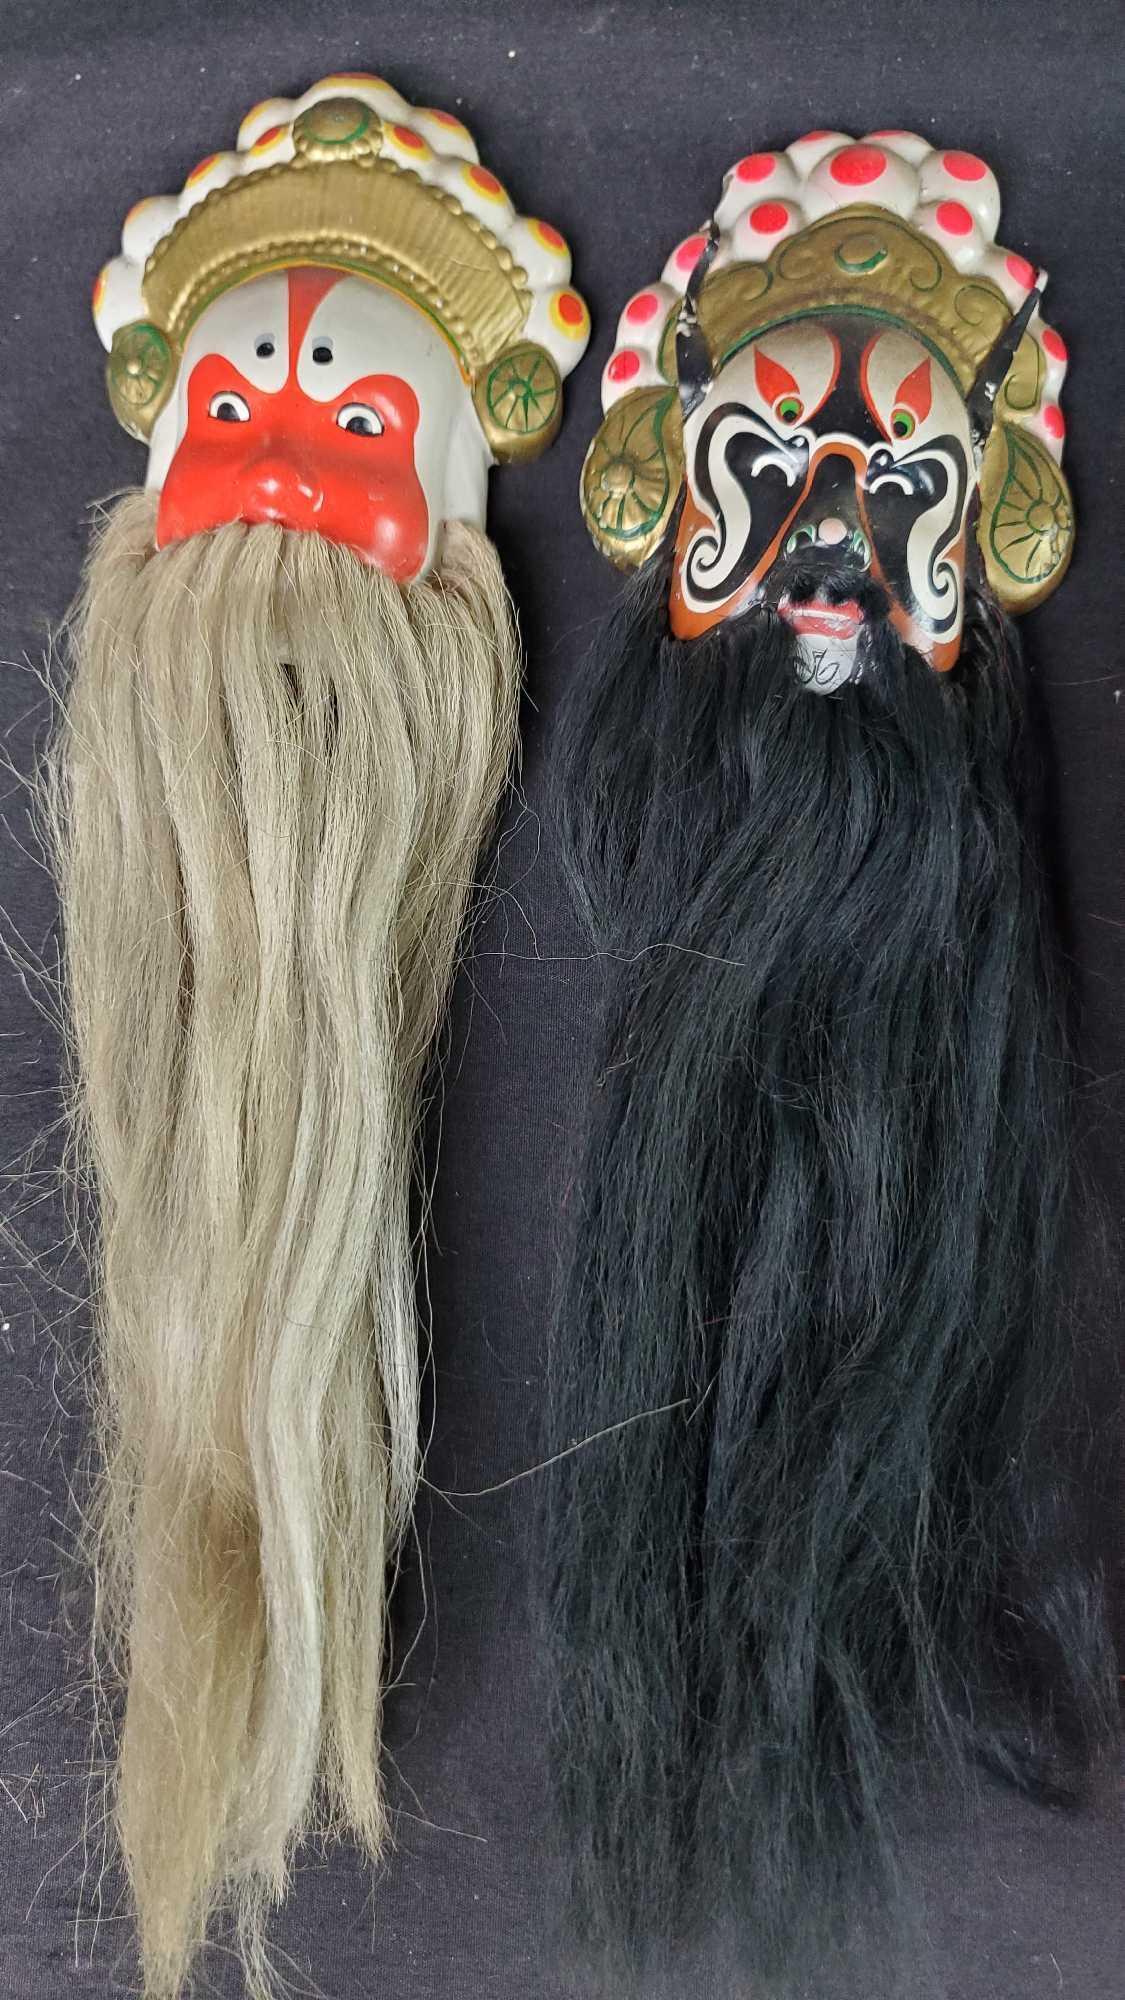 Lot of 8 Chinese vintage ceramic bearded opera masks